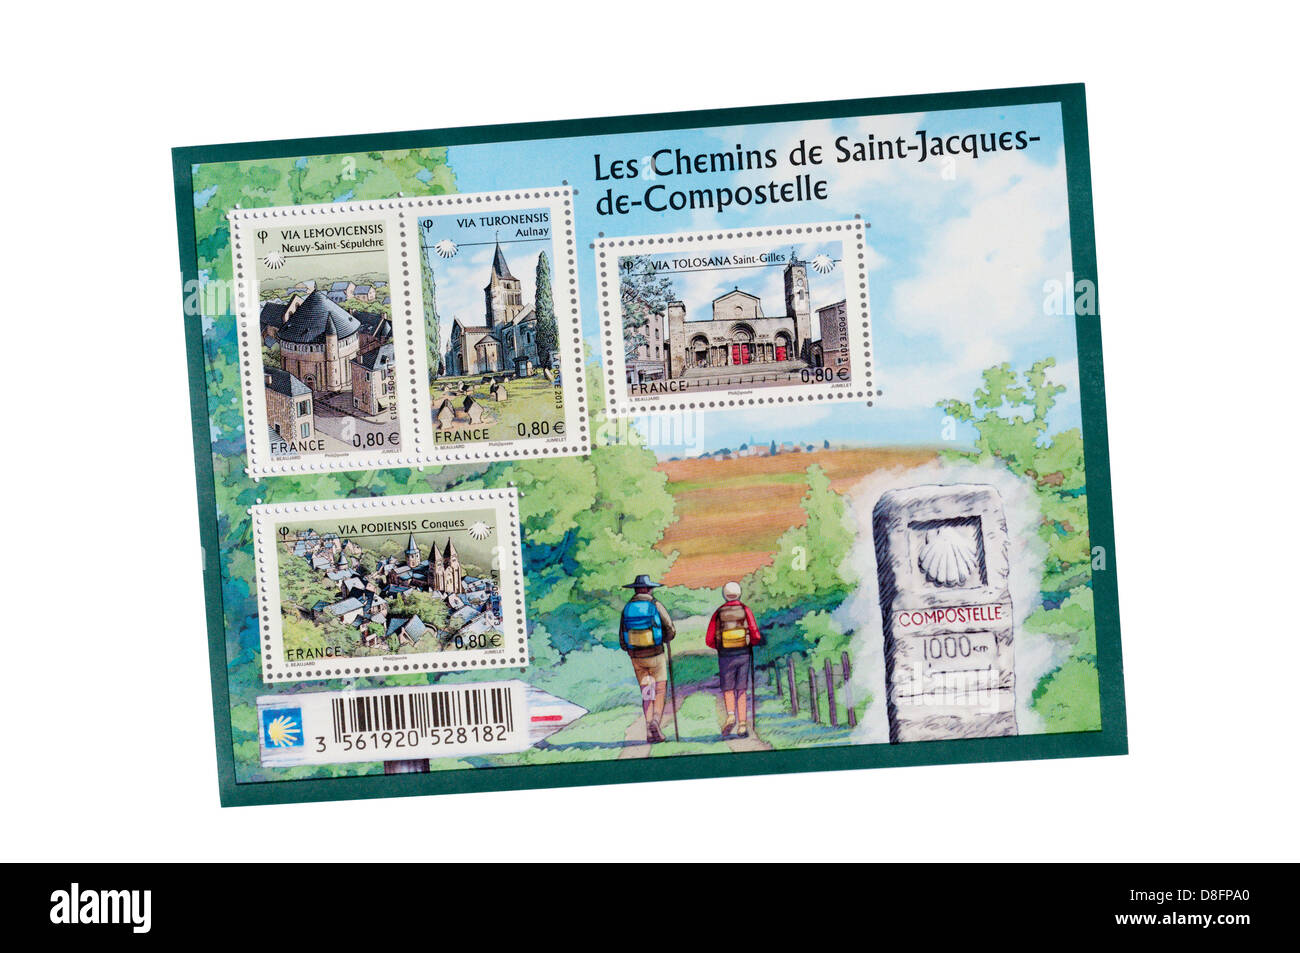 Une feuille de timbres-poste commémoratifs français célèbre le chemin de Saint-Jacques de Compostelle. Banque D'Images